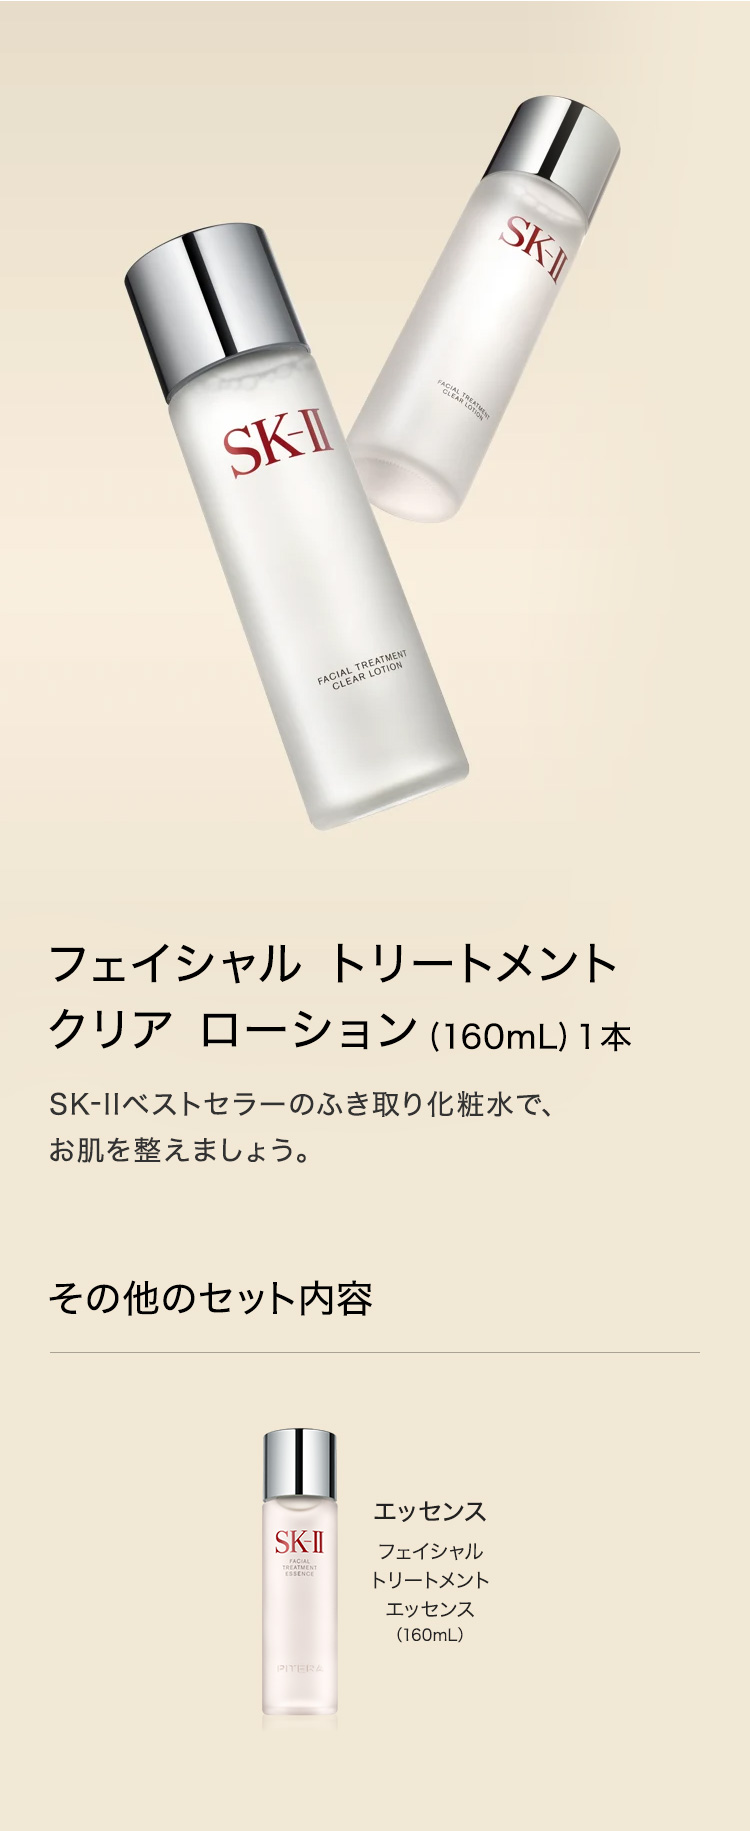 【正規取扱店】 P&G SK2 クリアローションセット FTエッセンス、 化粧水/ローション